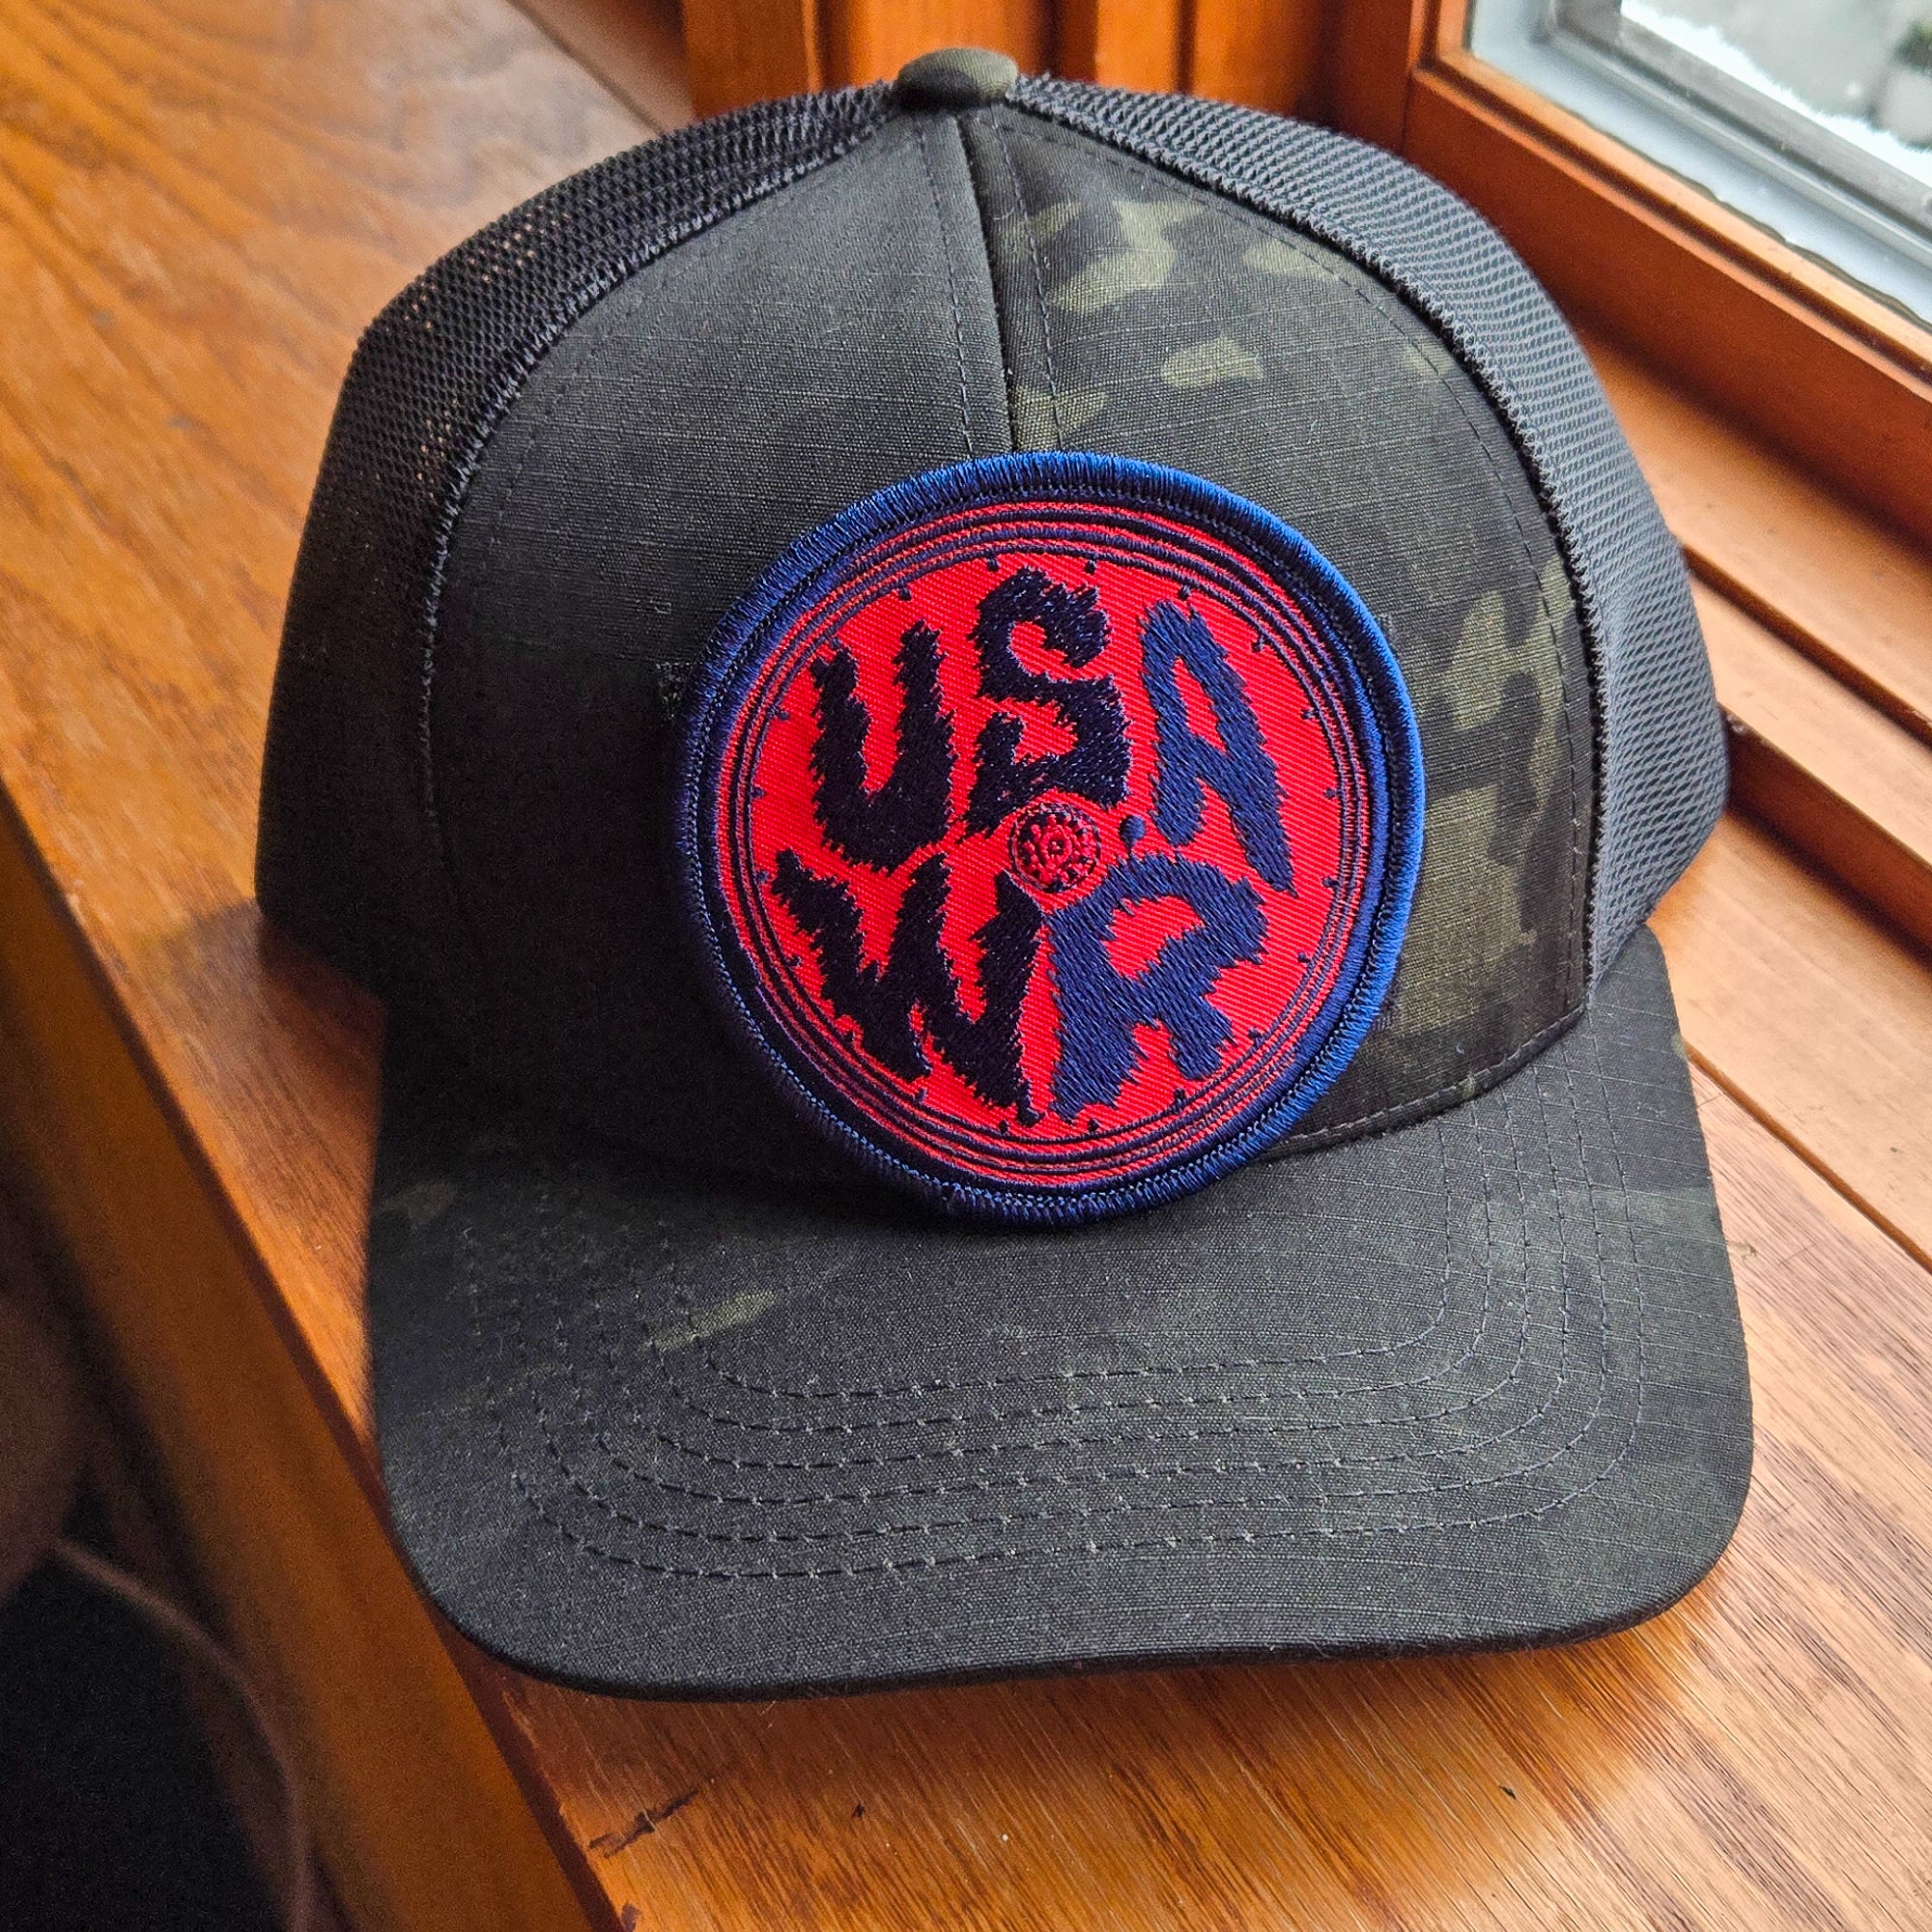 USAWR Wheel Camo Patch Hat